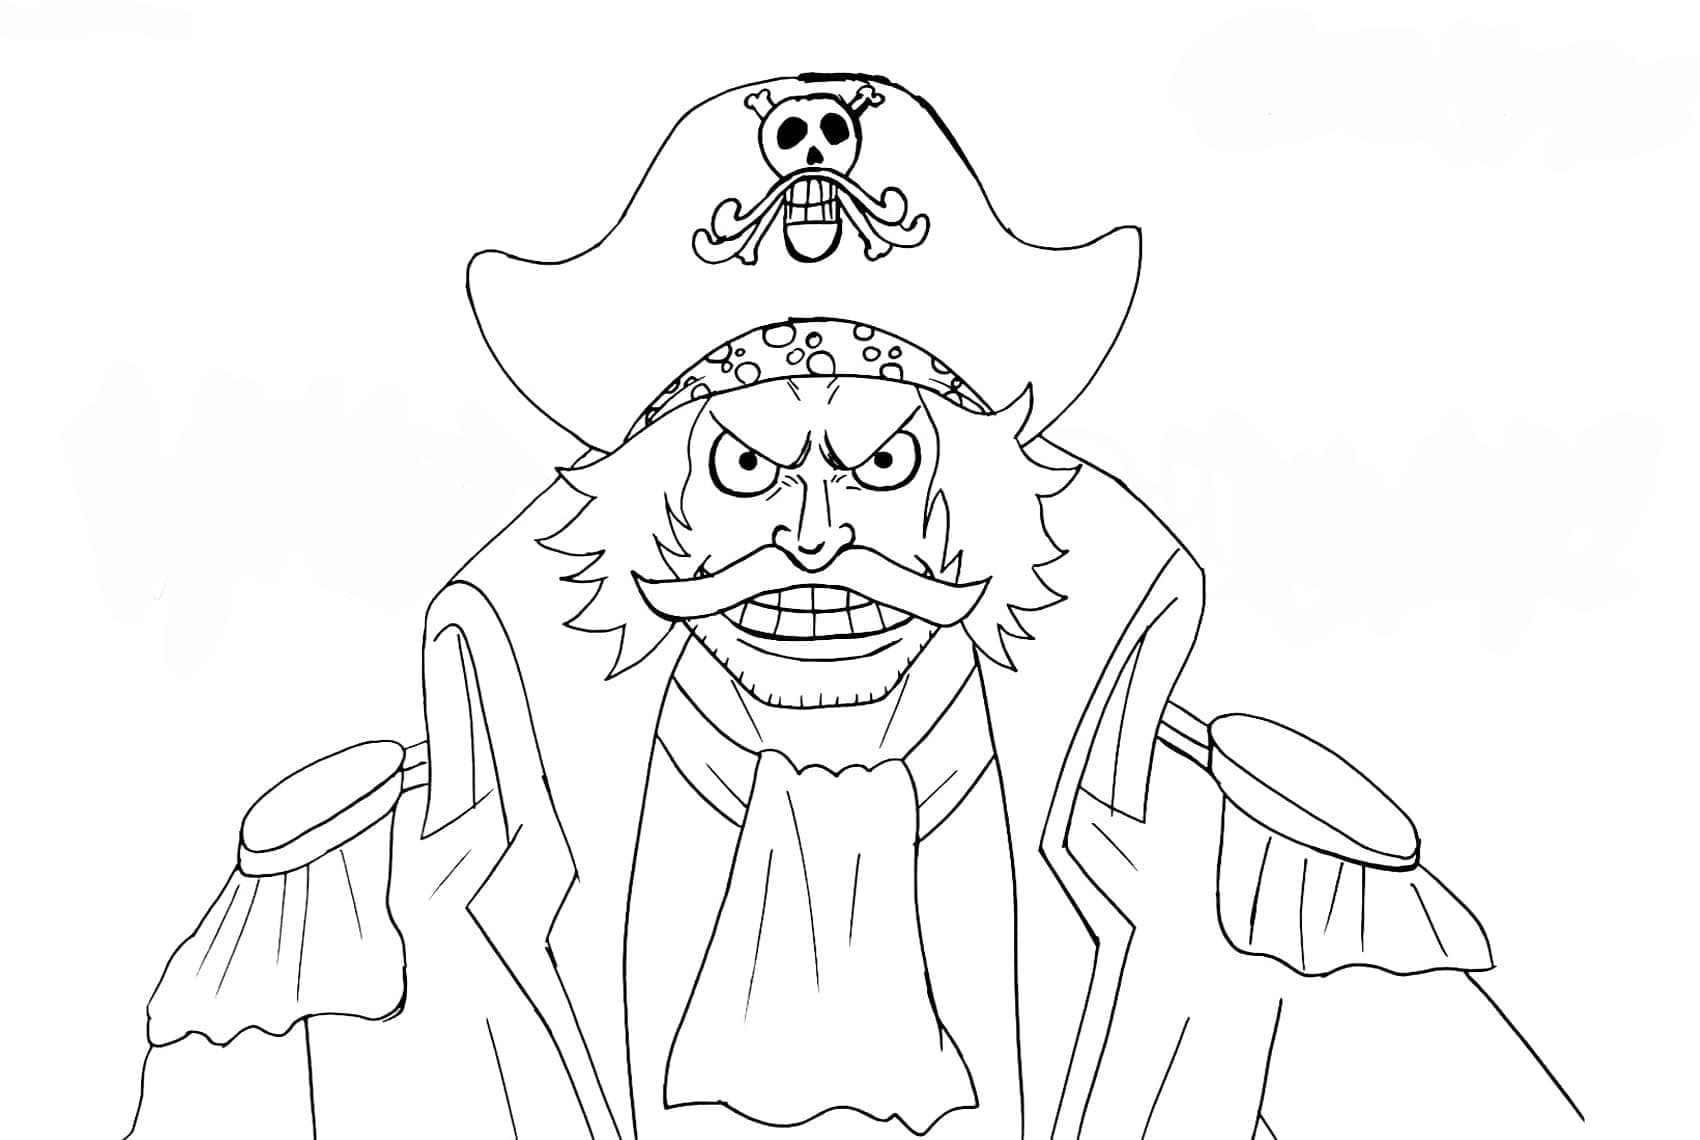 Roger z One Piece omalovánka